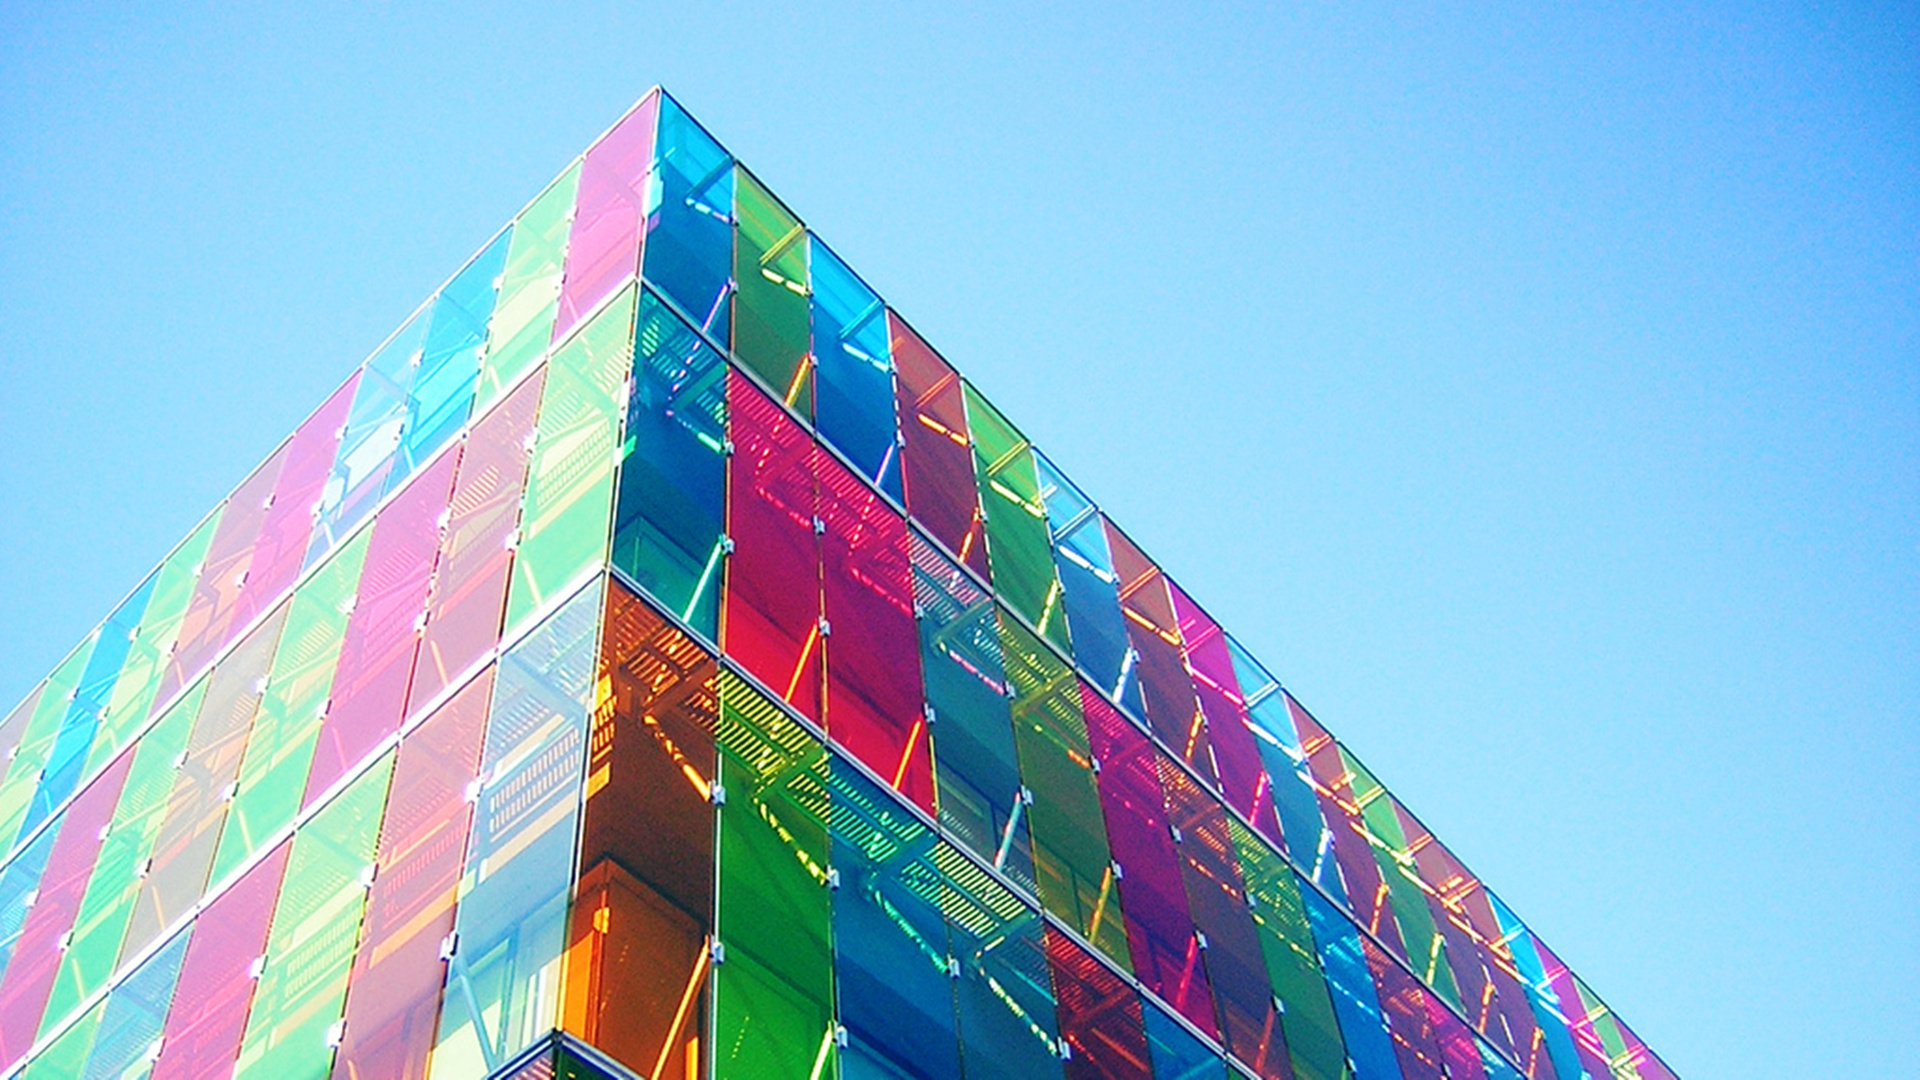 باکیفیت ترین عکس ساختمان بلند با شیشه های رنگی Full HD 